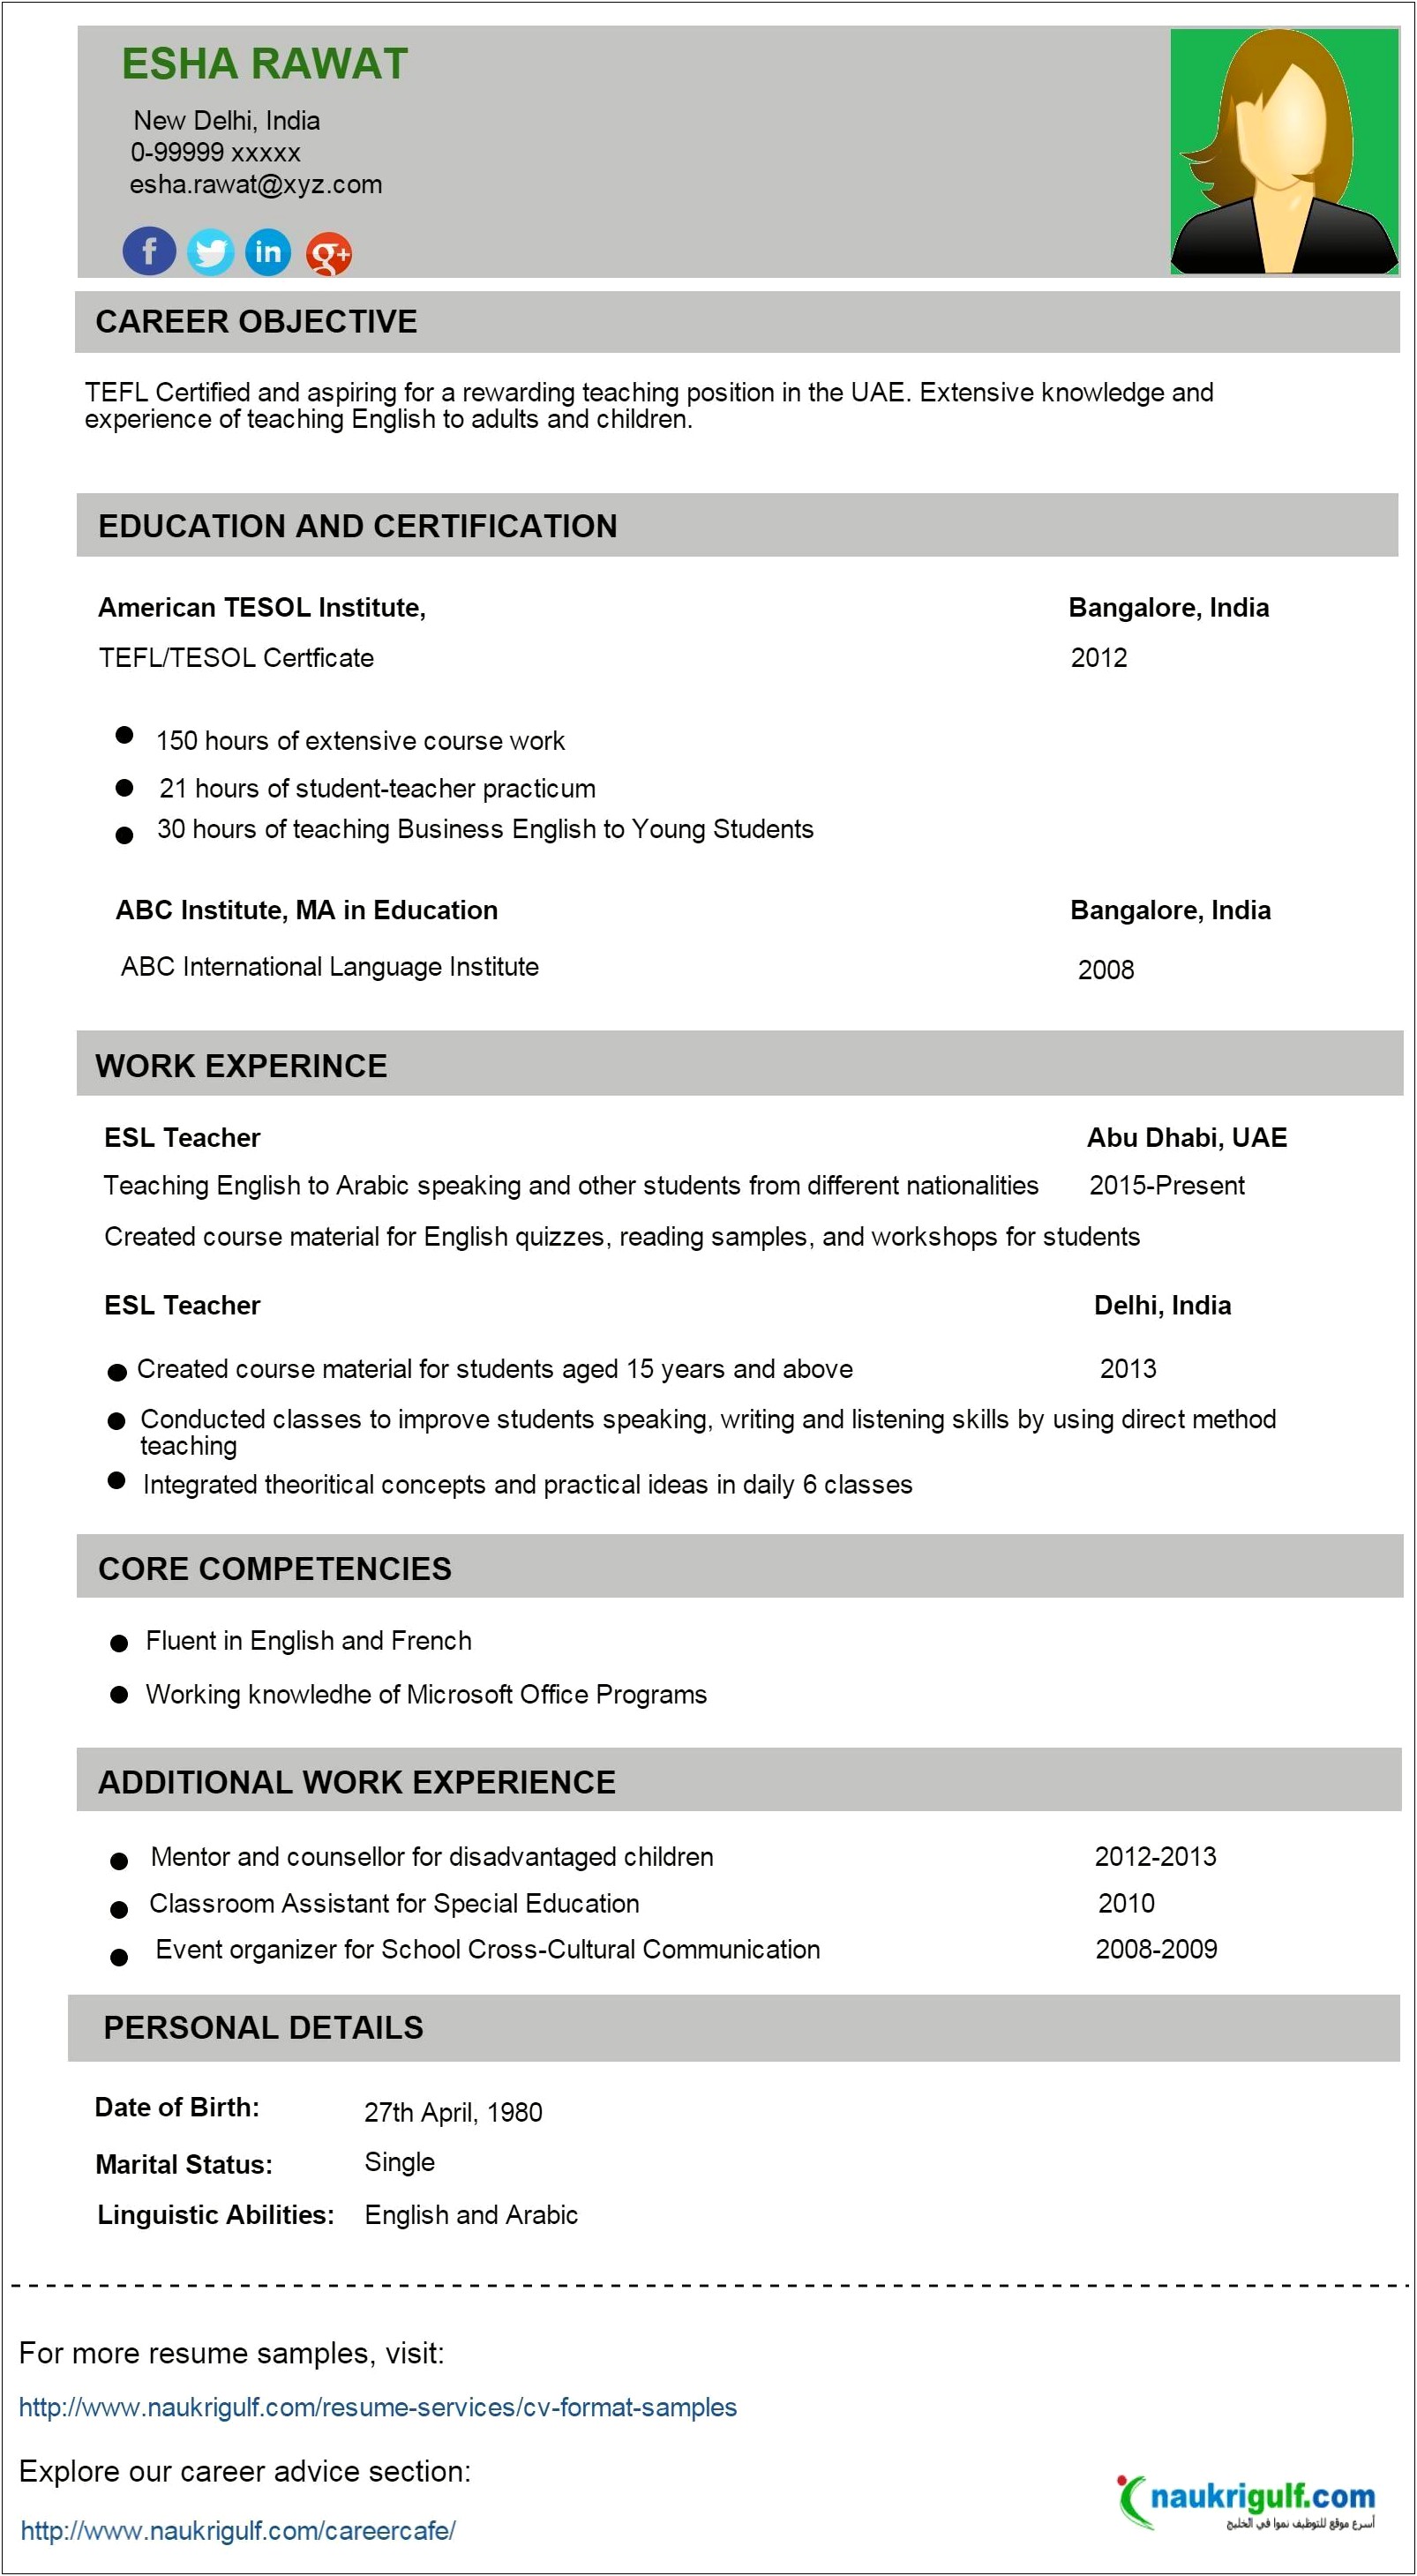 Resume Format For Teacher Job